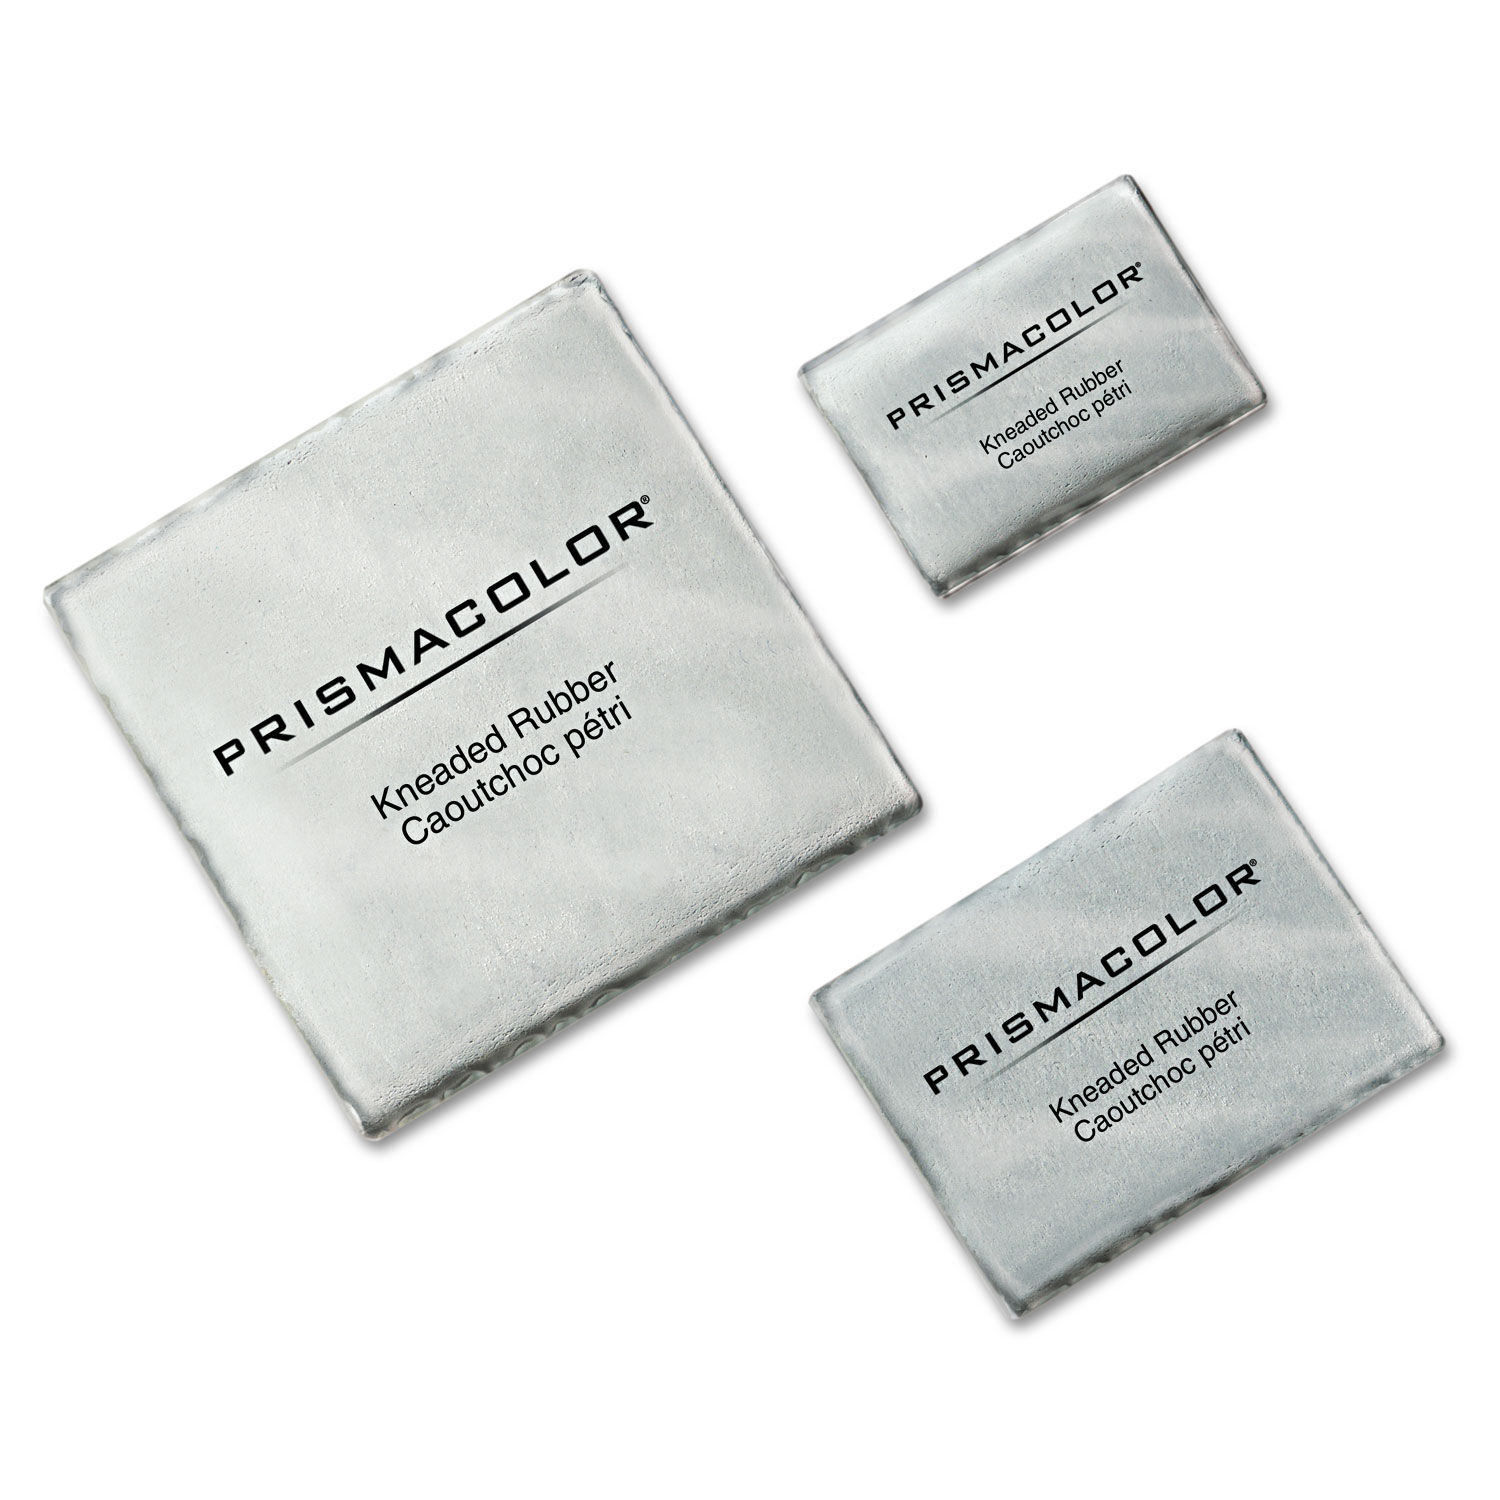  Prismacolor Eraser, Kneaded Rubber Eraser Large, Grey, 12 Pack  : Office Products